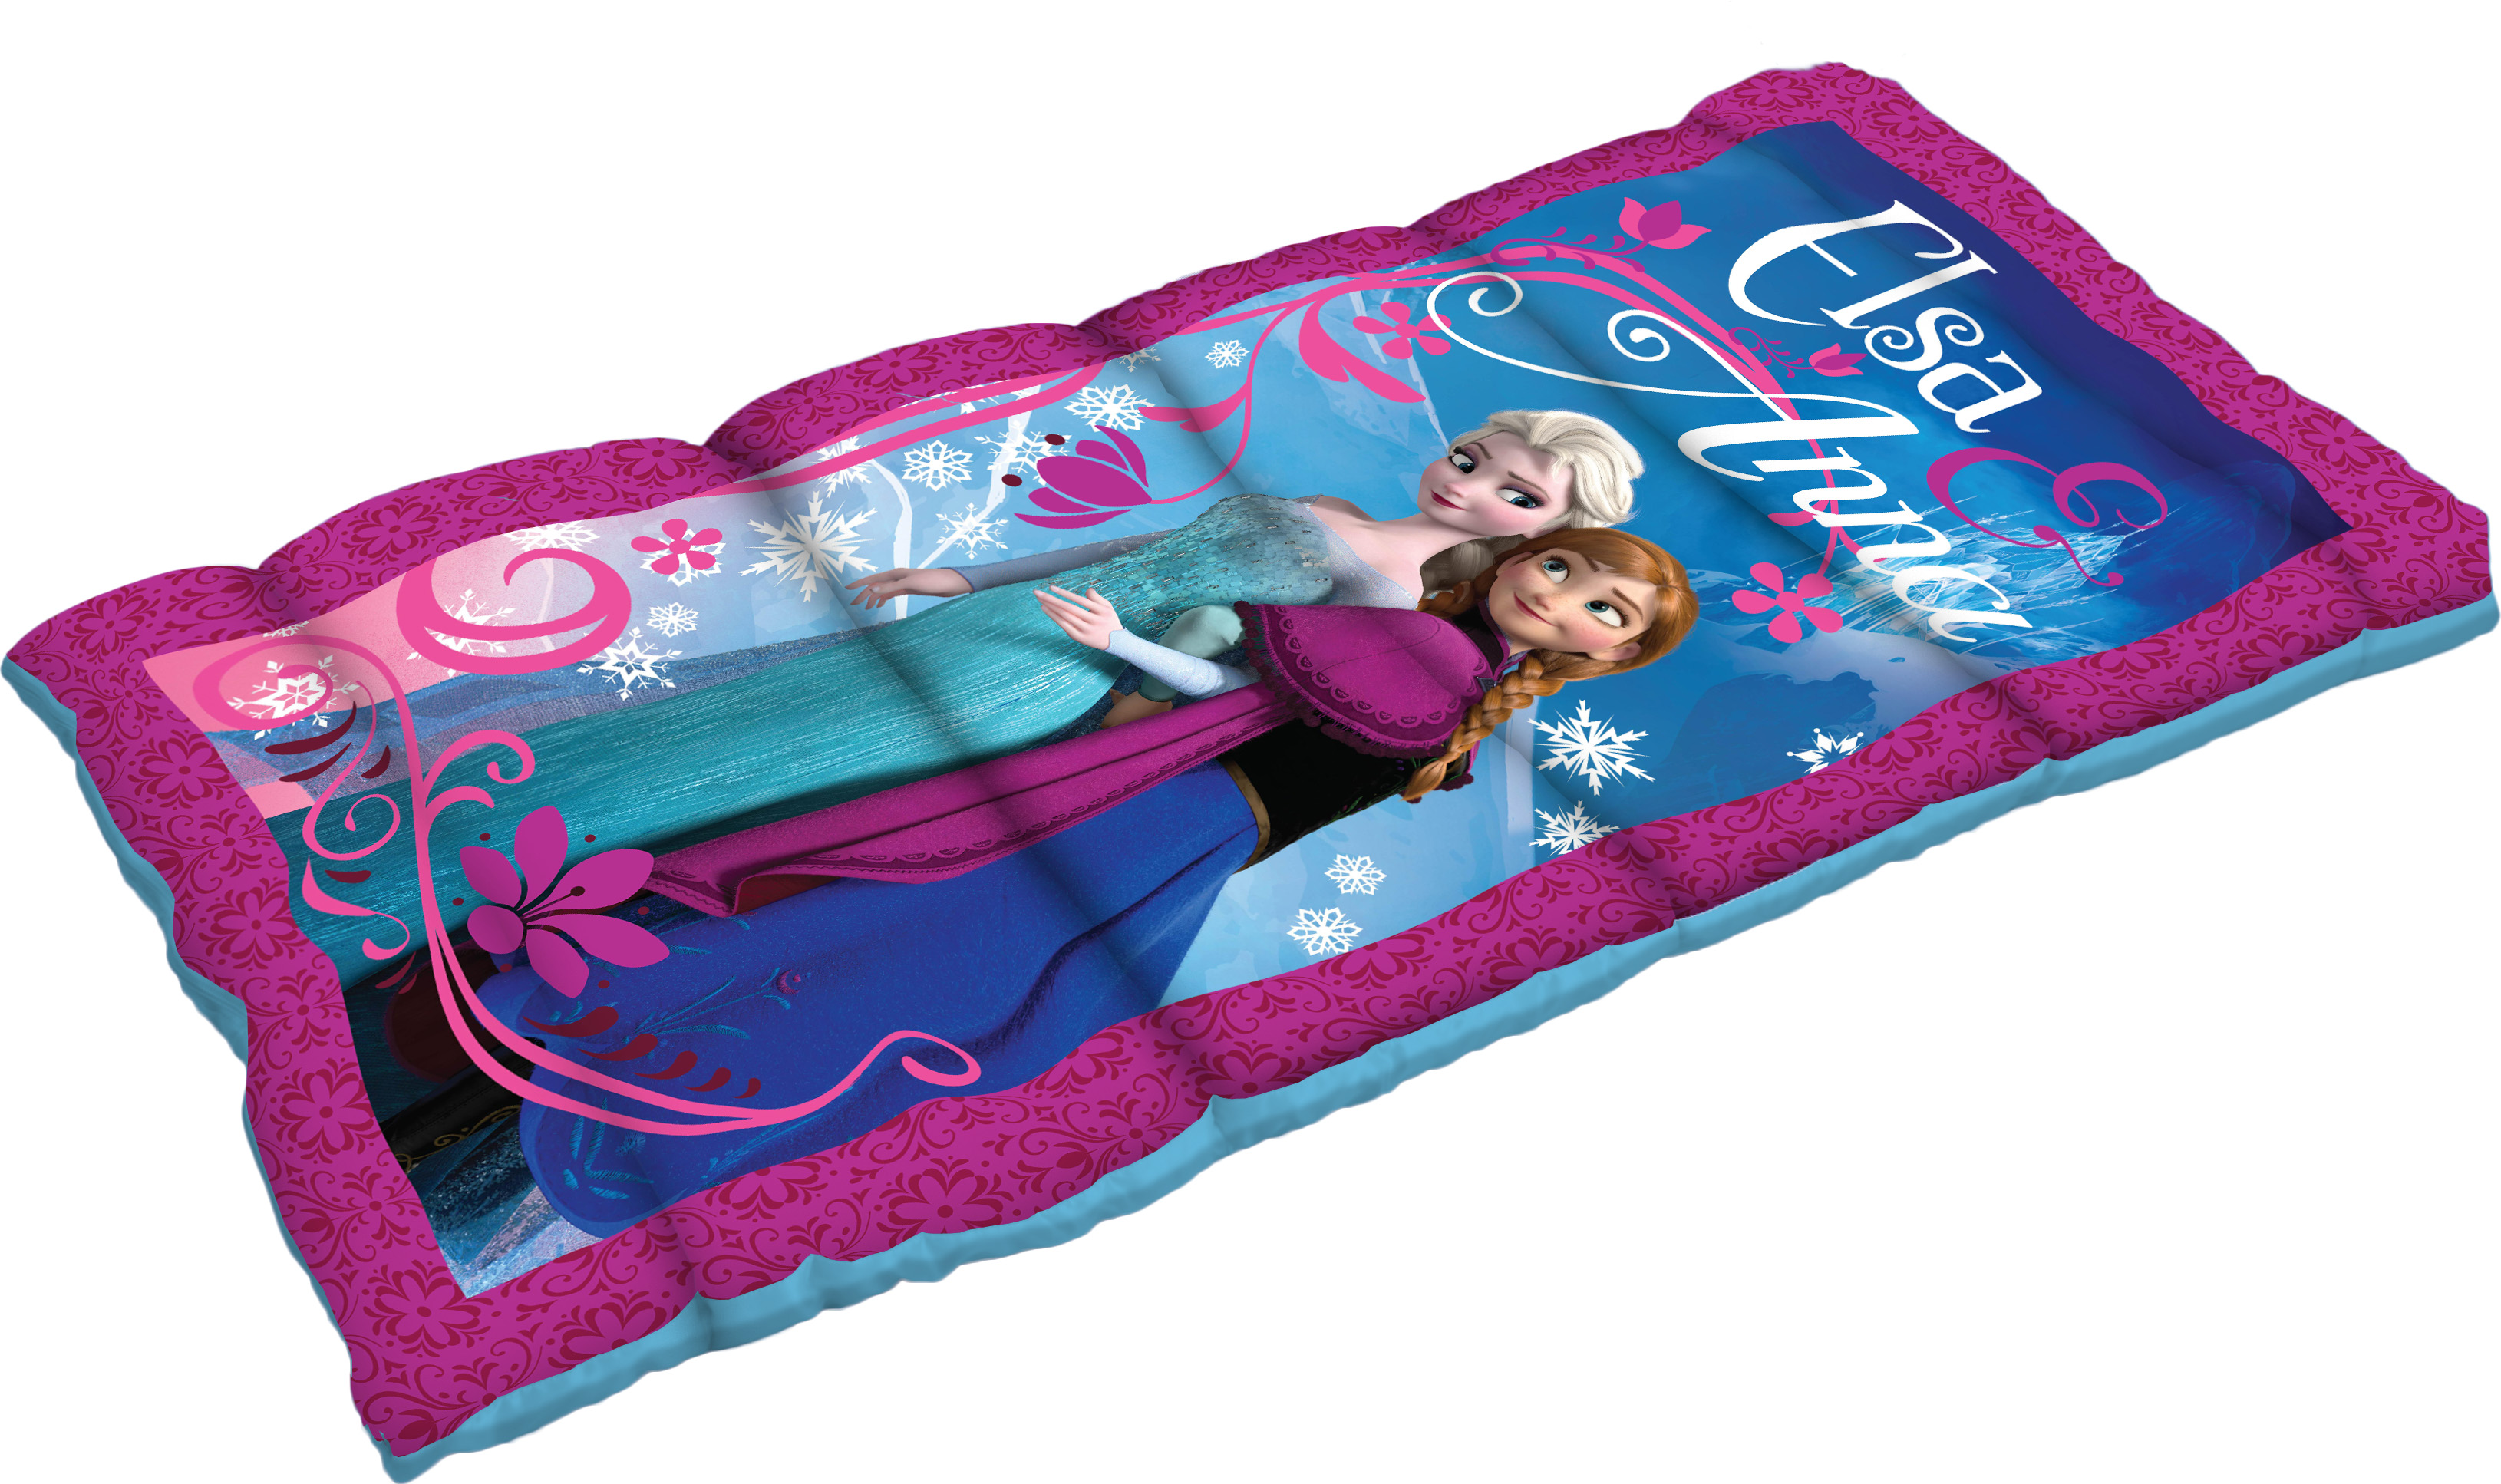 Disney Frozen Kids Sleeping Bag   Fitness & Sports   Outdoor